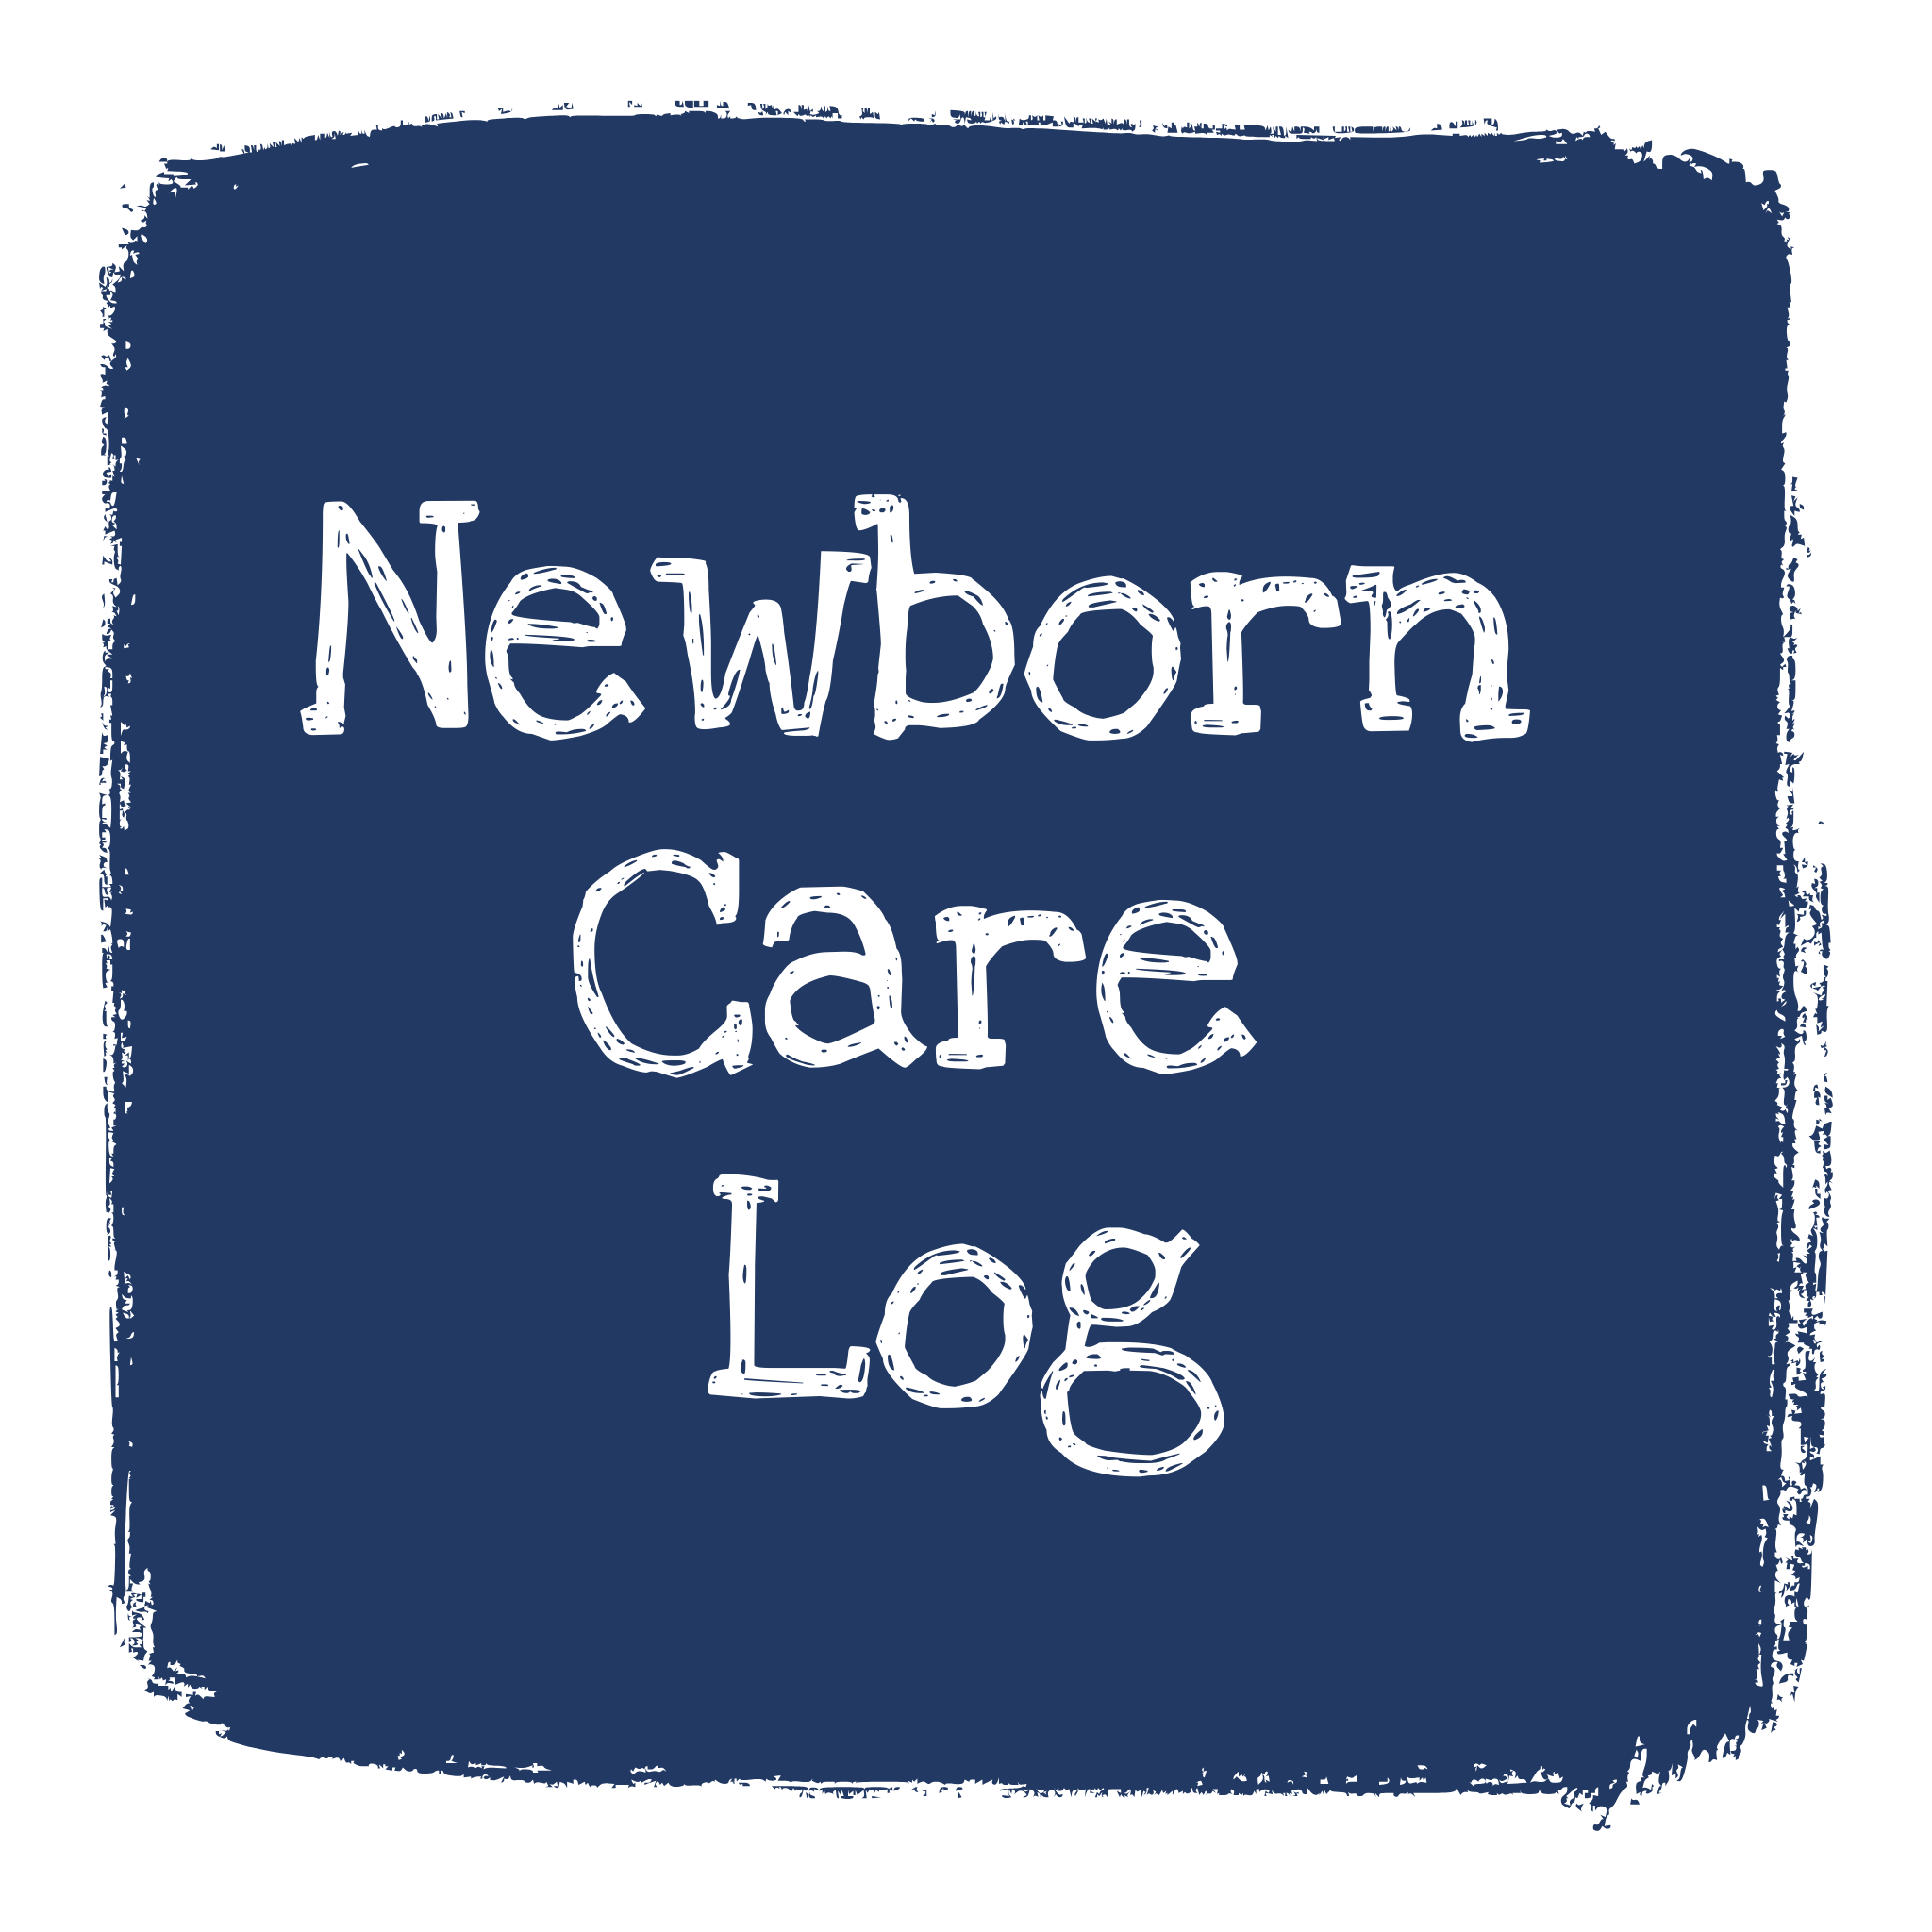 Newborn Care Log